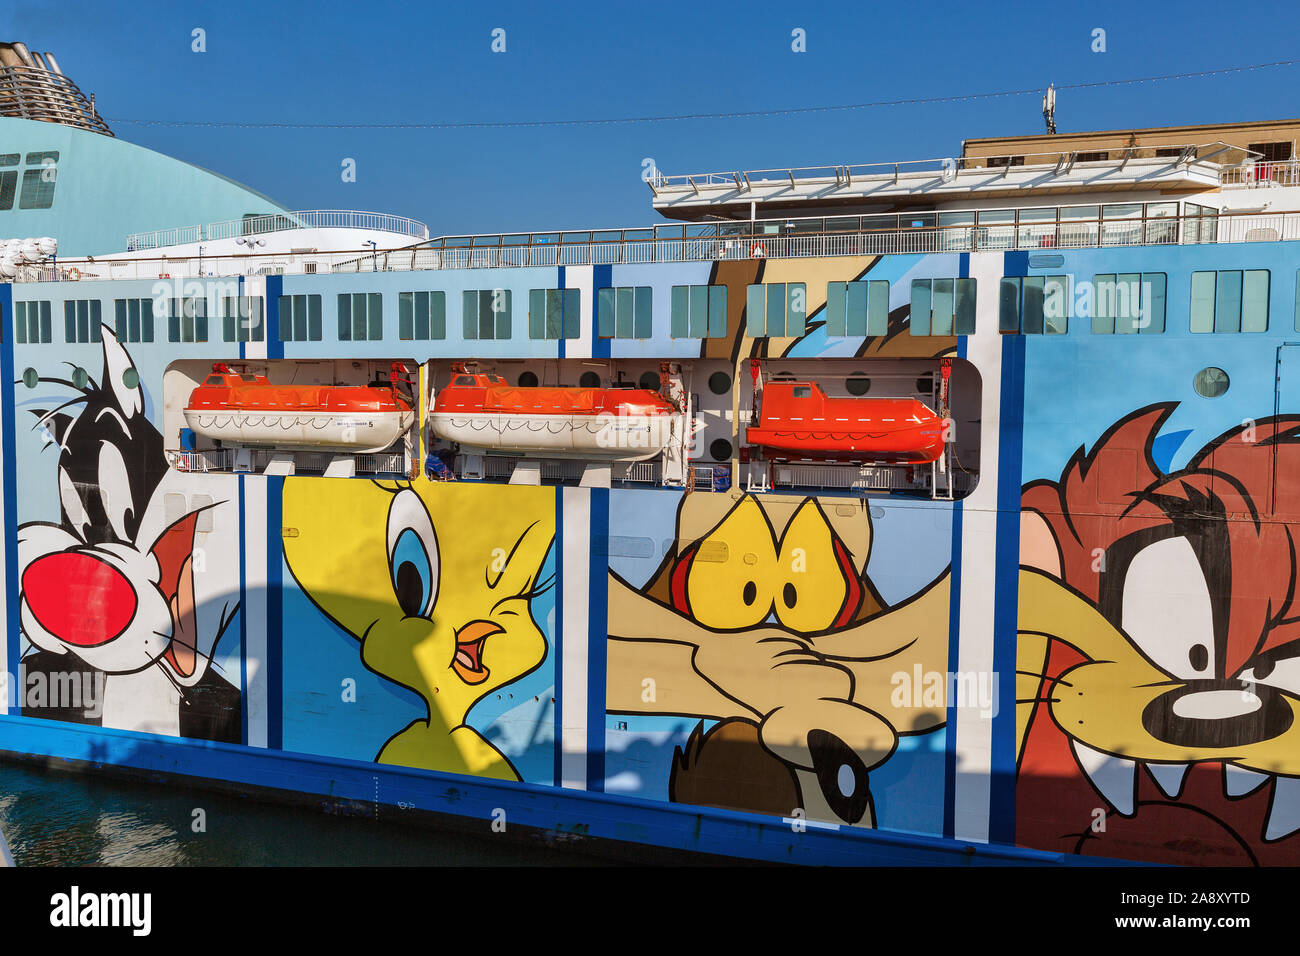 LIVORNO, ITALIEN - Juli 12, 2019: Moby Wonder Fähre Schiff Nahaufnahme. Italienische Unternehmen Moby Lines ist für die Verwendung von Warner Bros. Looney Tunes Charaktere bekannt als Stockfoto